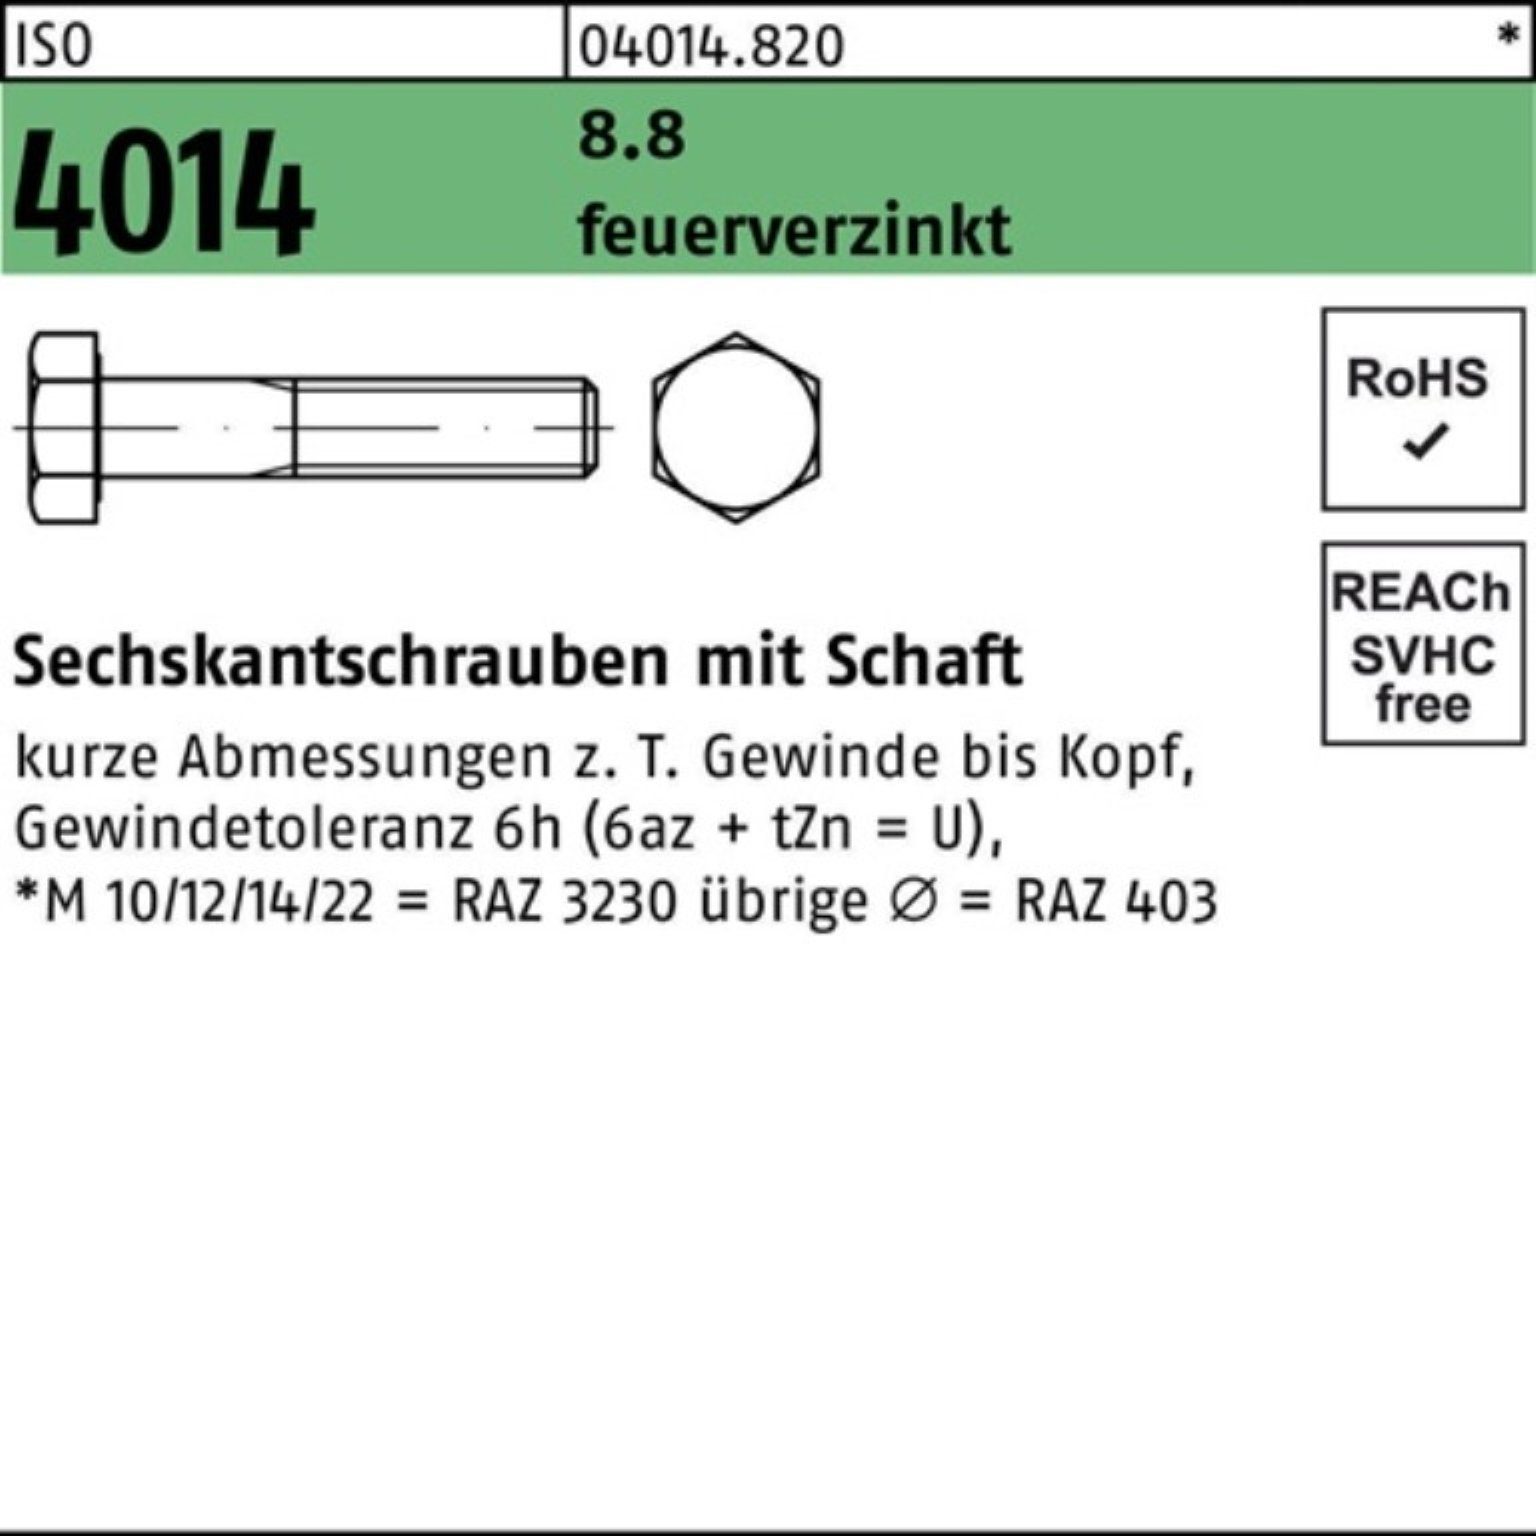 Bufab Sechskantschraube 200er Pack Sechskantschraube ISO 4014 Schaft M8x 65 8.8 feuerverz. 200